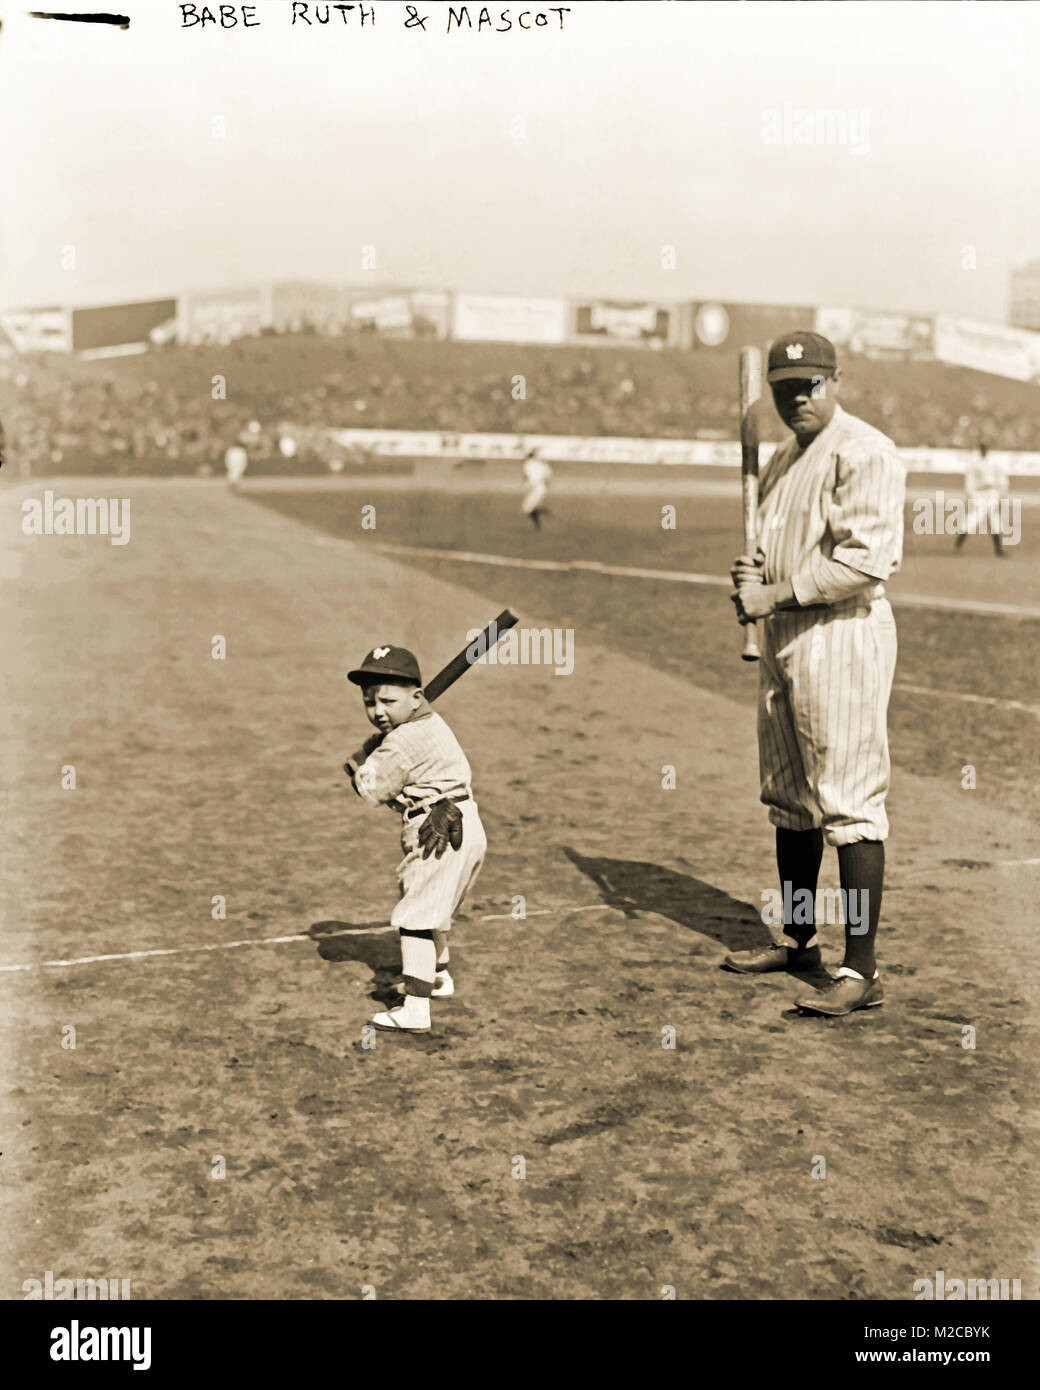 Babe Ruth und New York Yankees Maskottchen am Spieltag. Foto von der George  Grantham Bain Collection Stockfotografie - Alamy